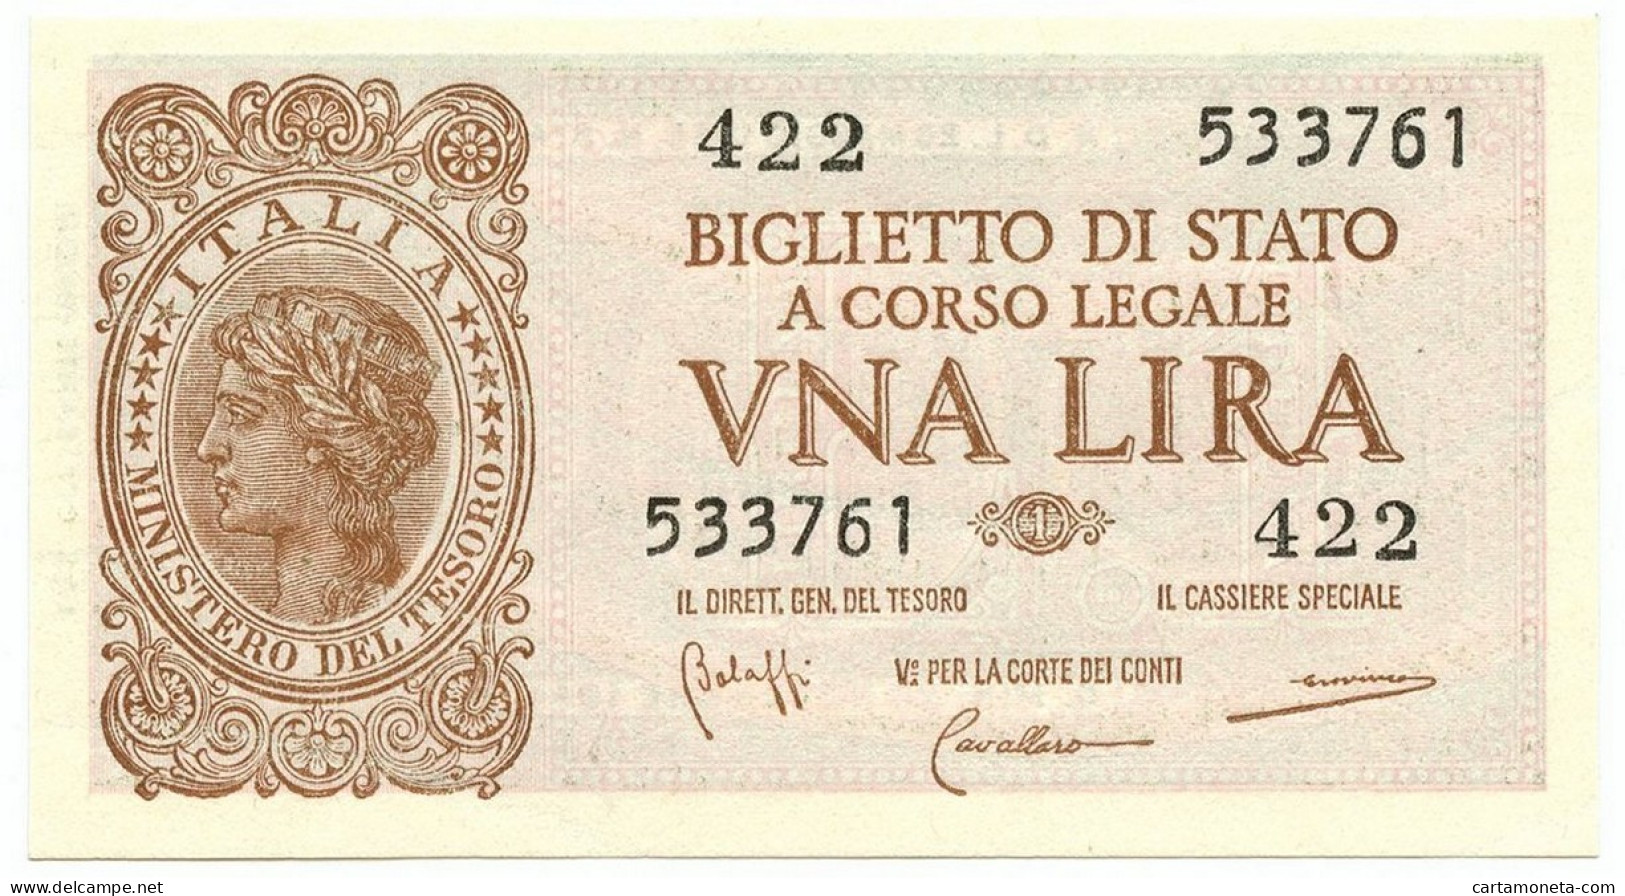 1 LIRA BIGLIETTO DI STATO LUOGOTENENZA UMBERTO BOLAFFI 23/11/1944 FDS - Regno D'Italia – Other